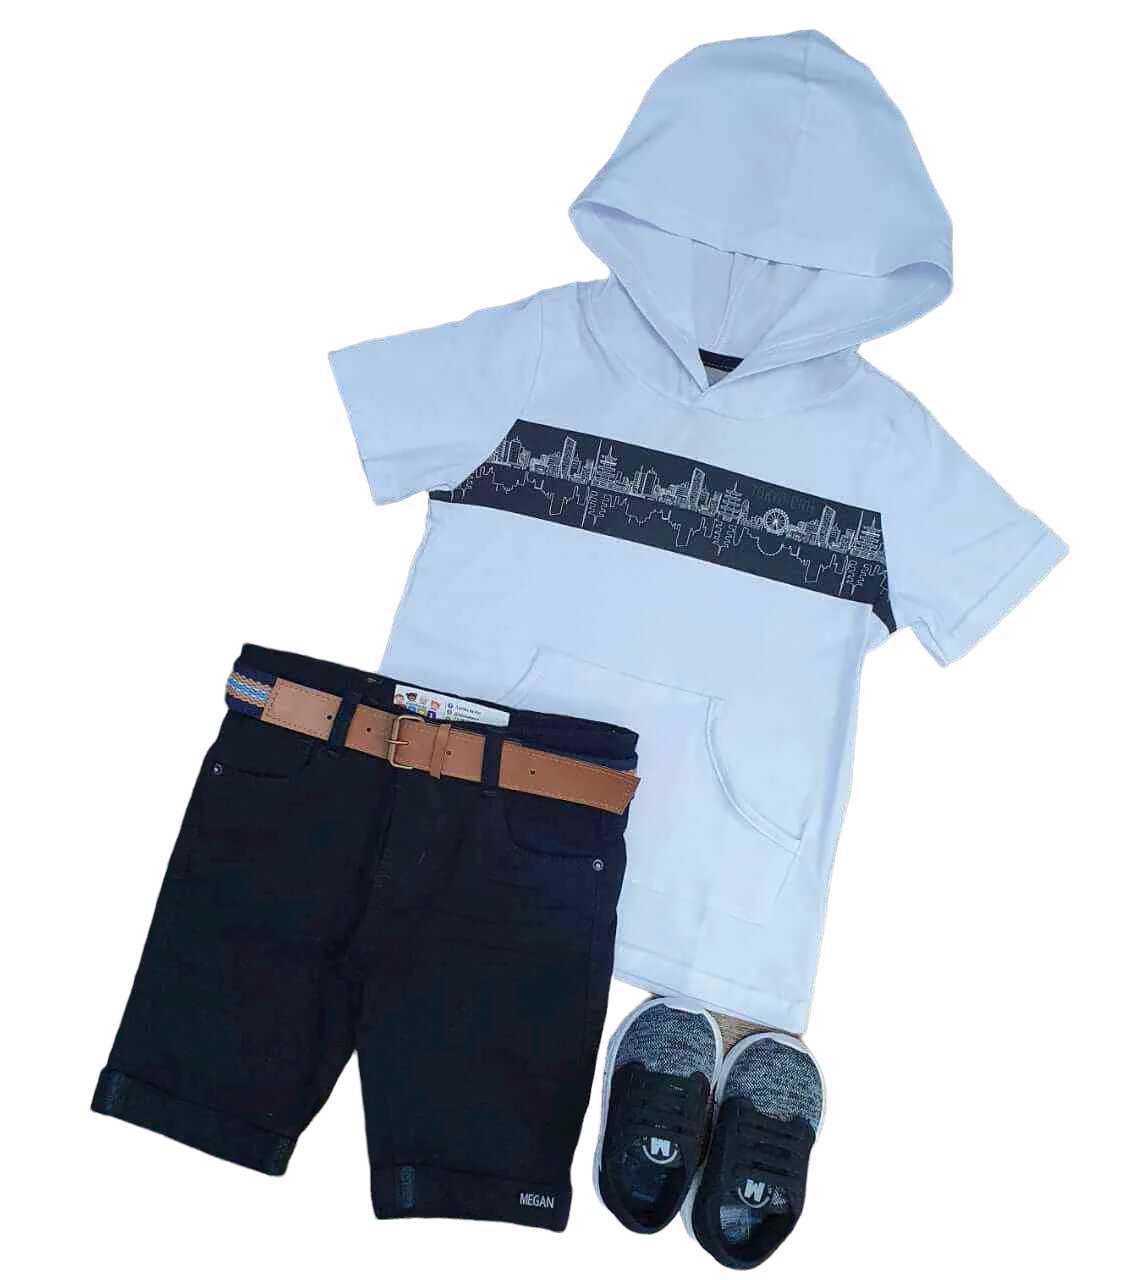 Bermuda Preta com Camiseta Branca com Capuz Infantil  - Lojinha da Vivi